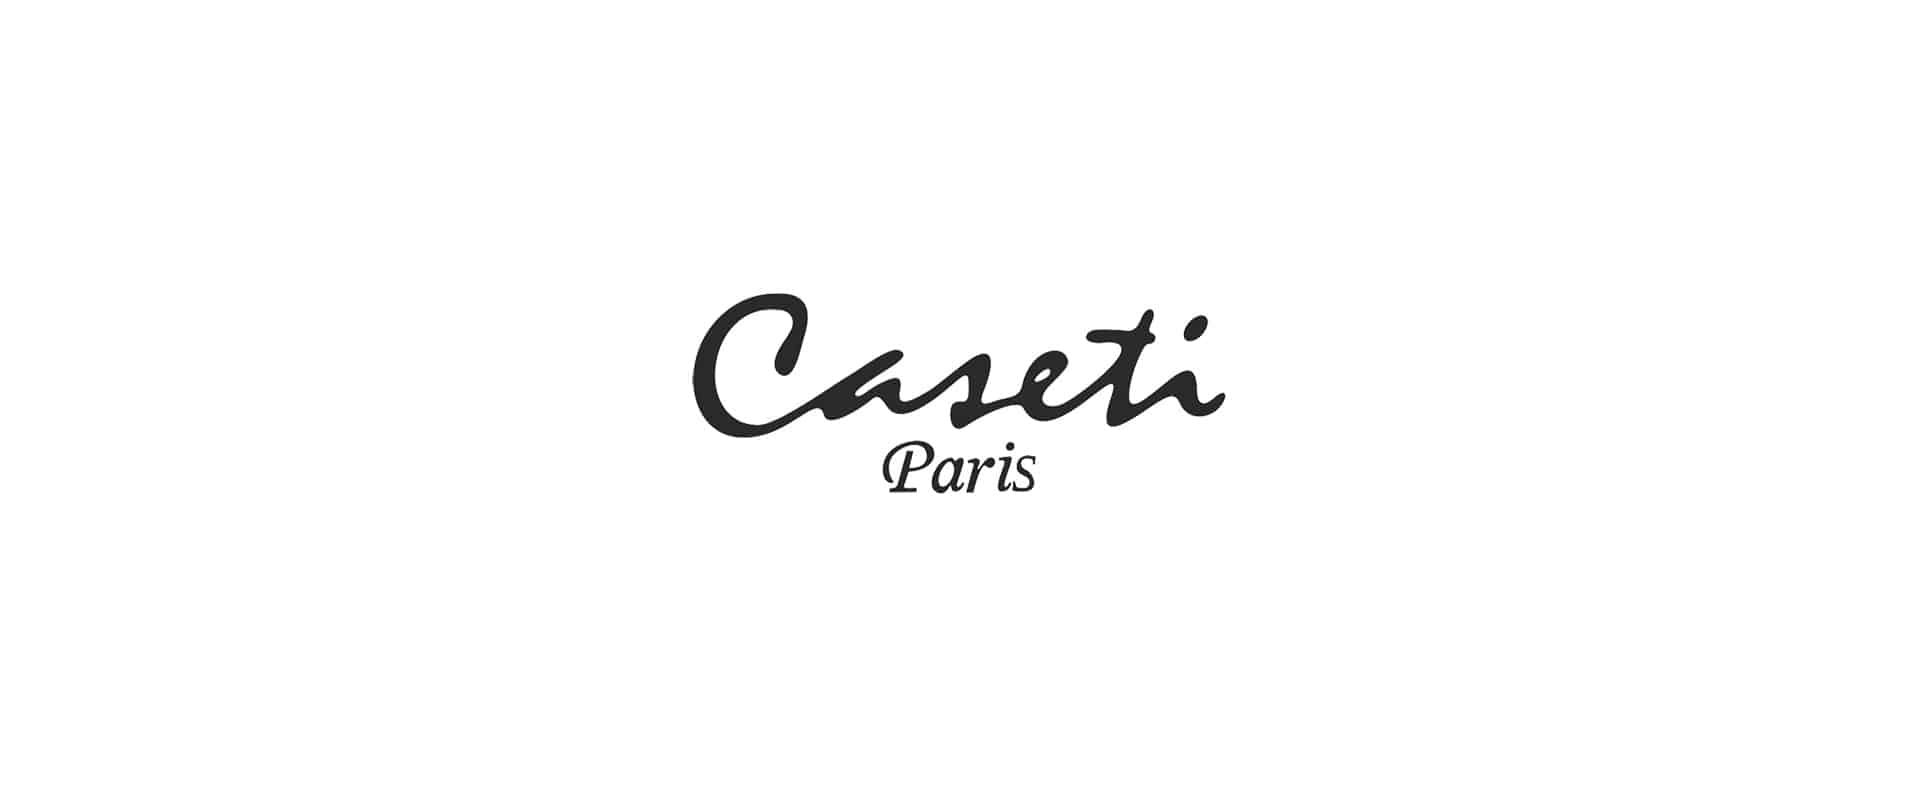 Caseti of Paris